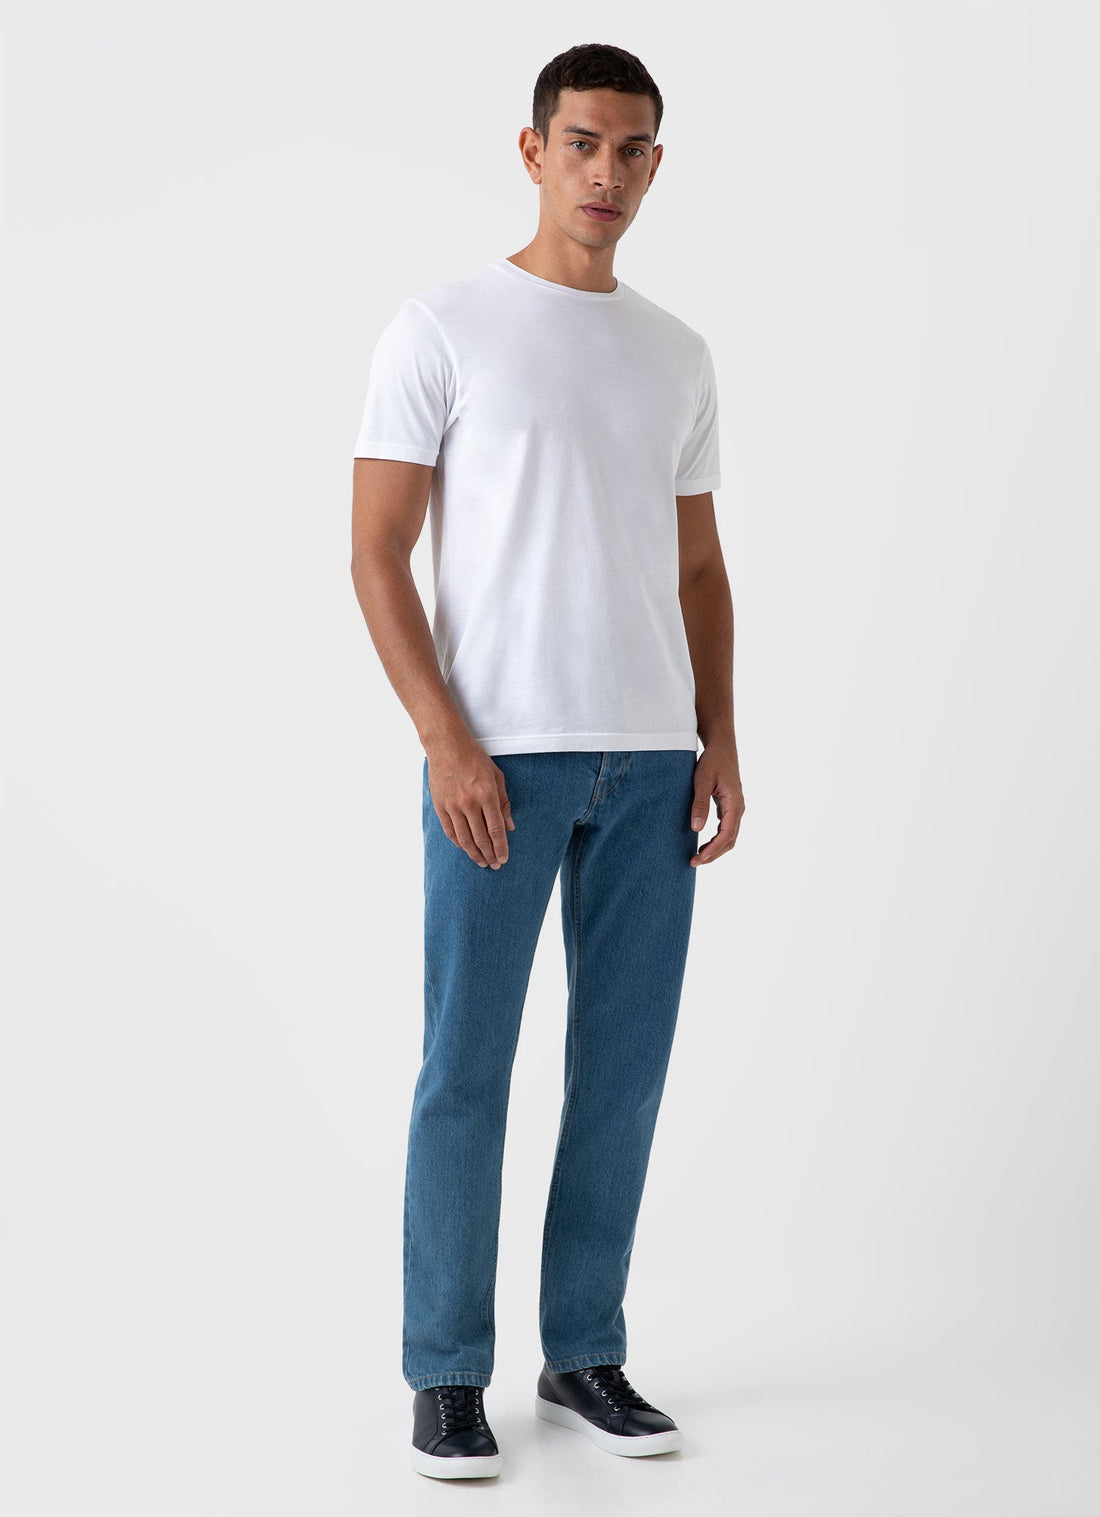 Men's Regular Fit Jeans in Mid Wash Denim